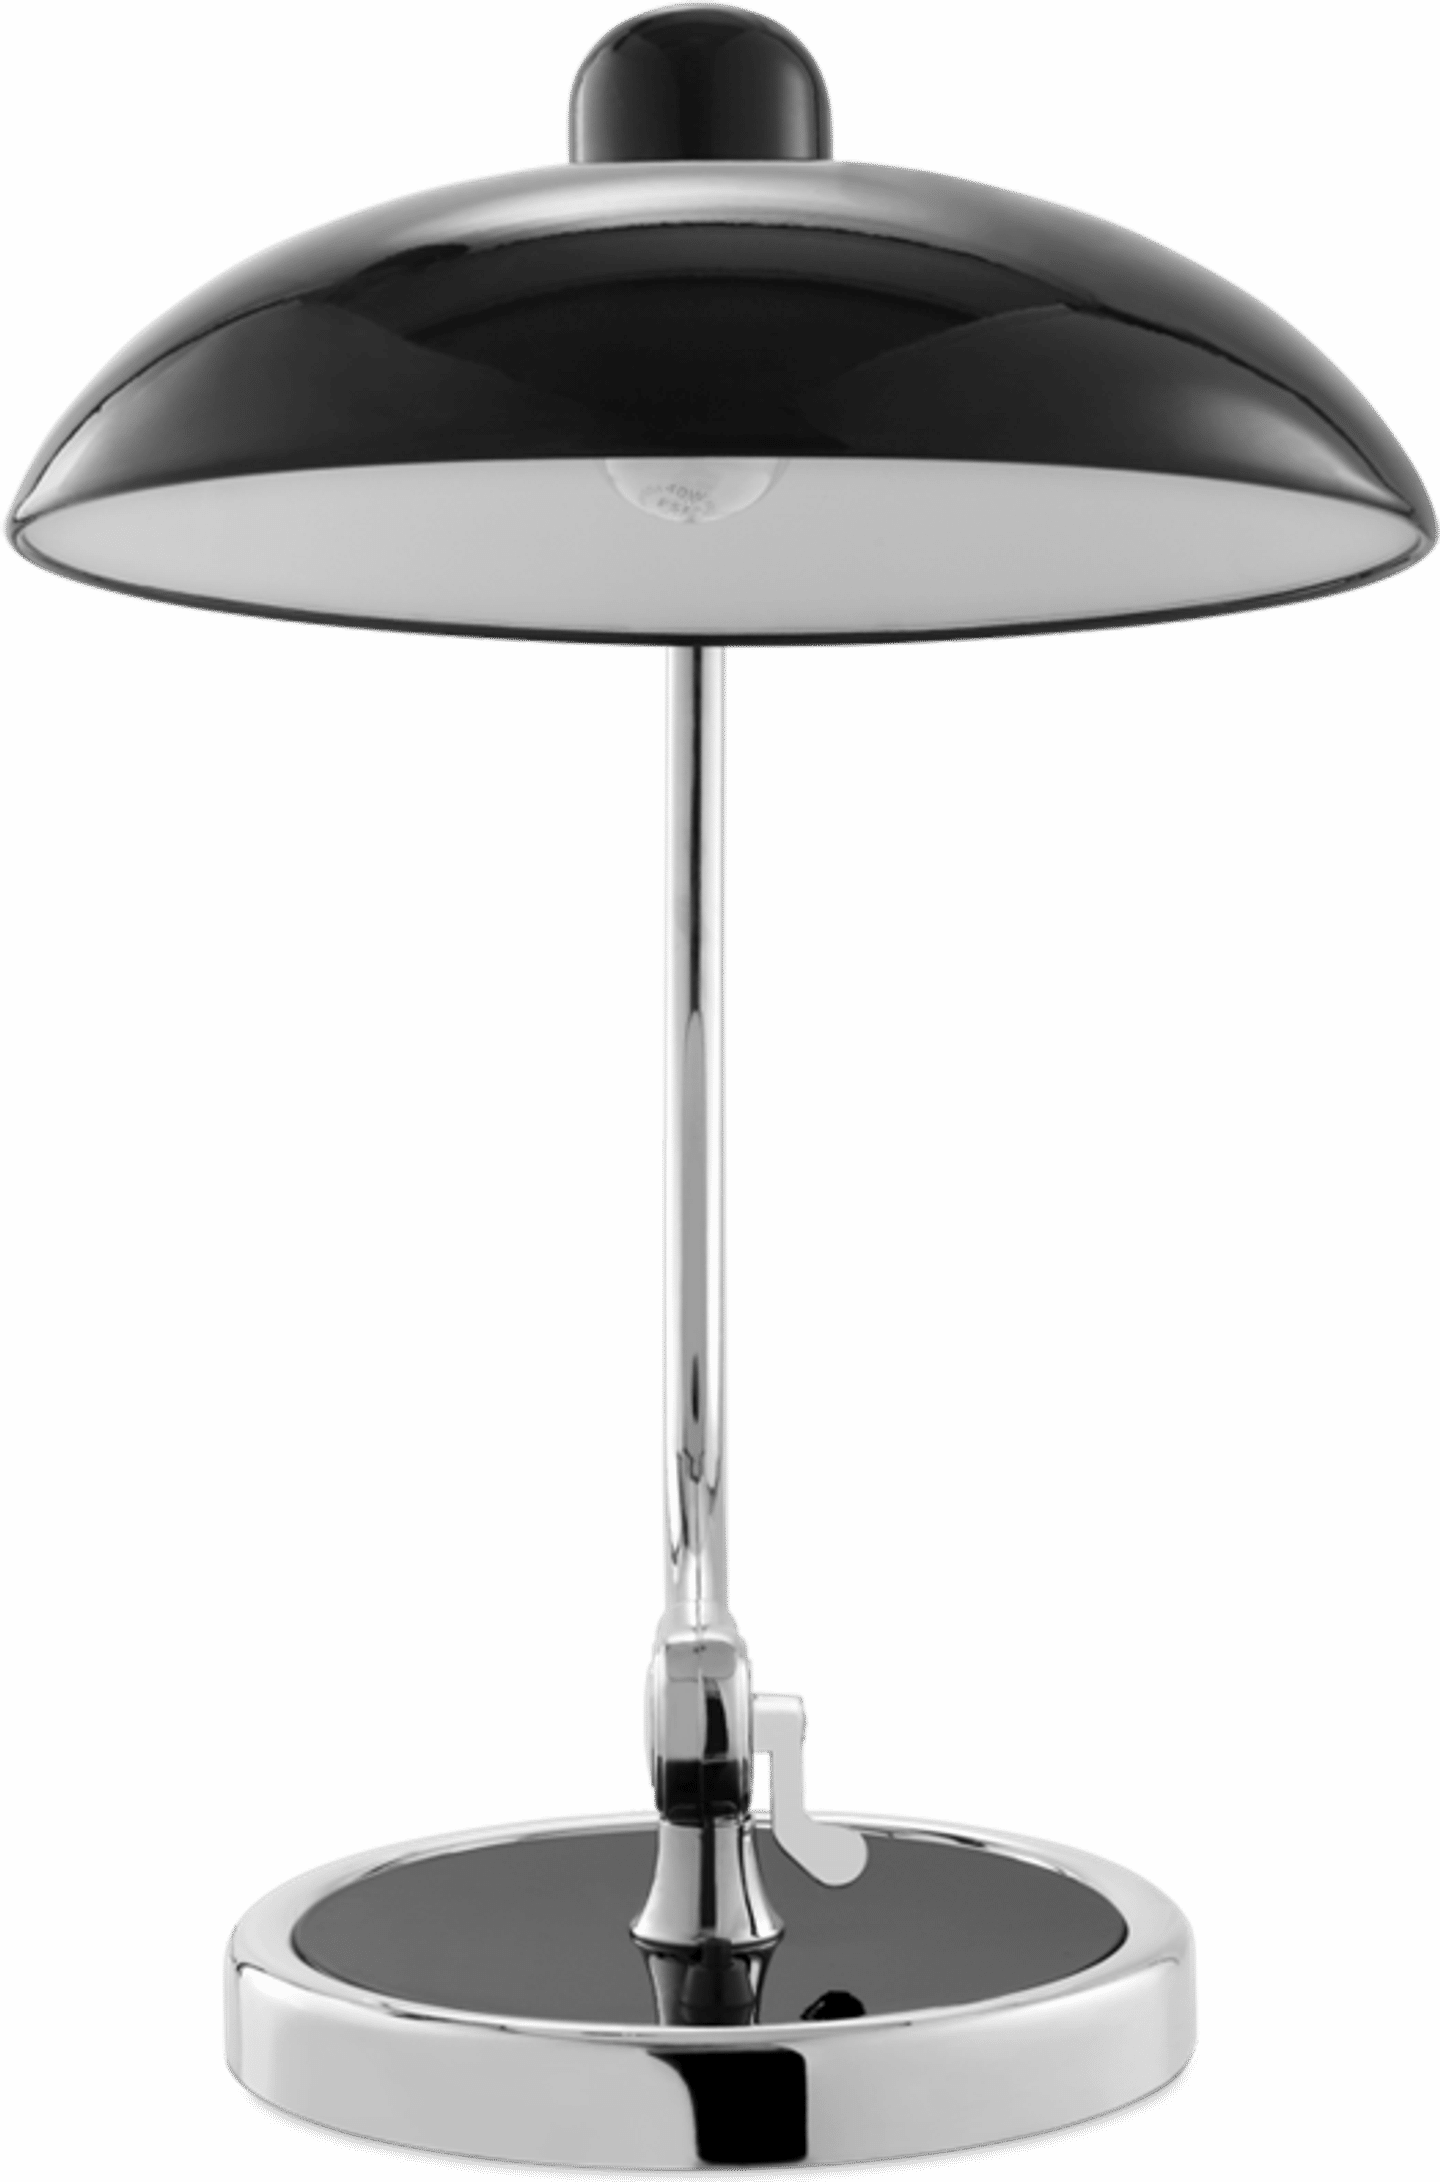 Lámpara de mesa Kaiser Idell Style Black image.